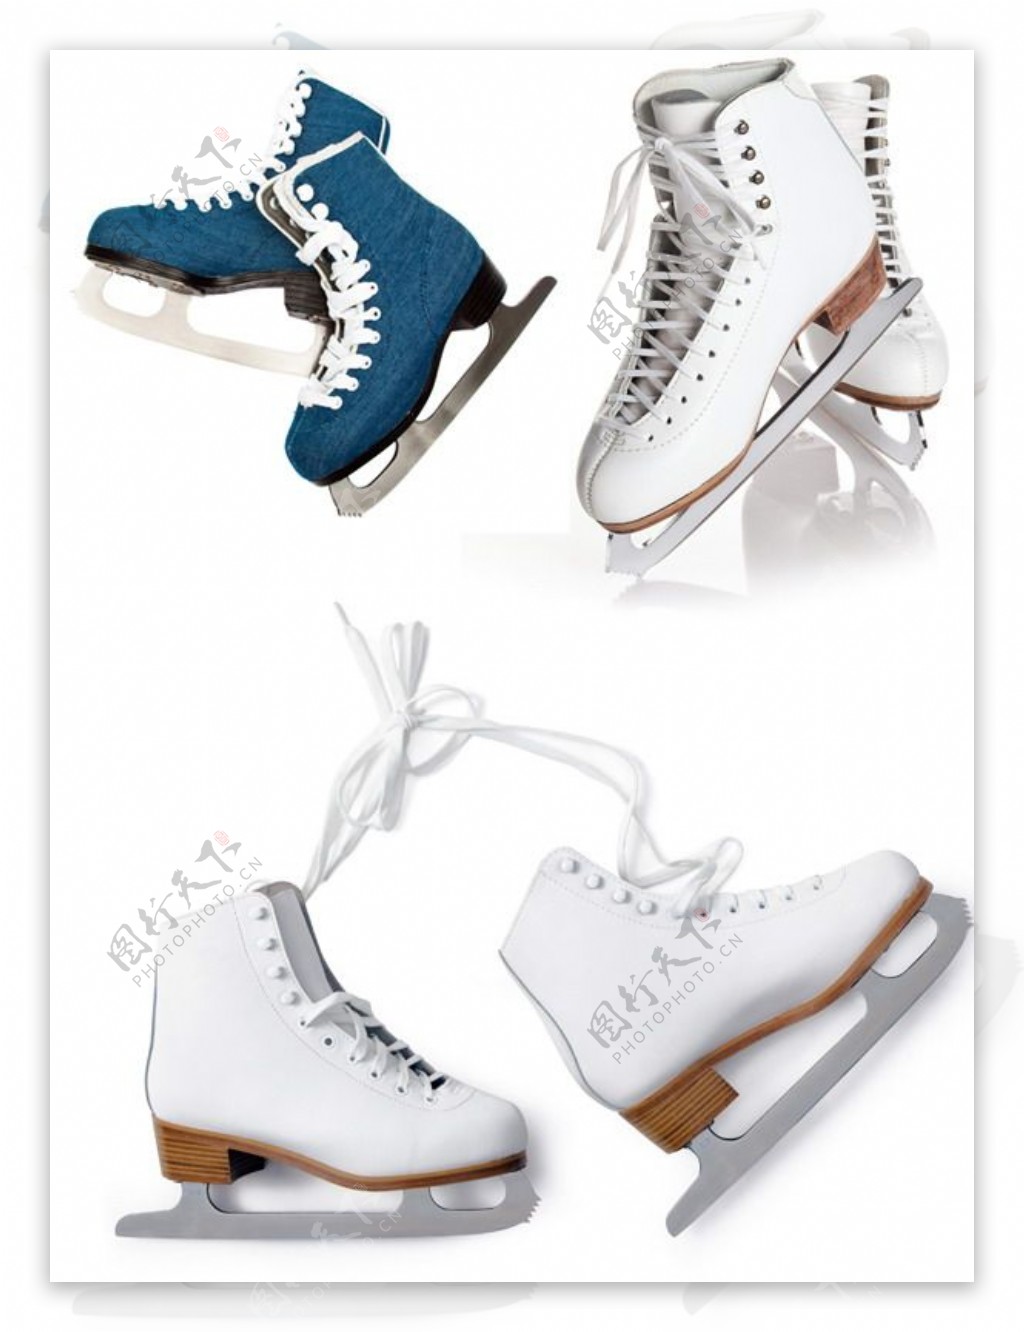 冰刀滑冰鞋图片